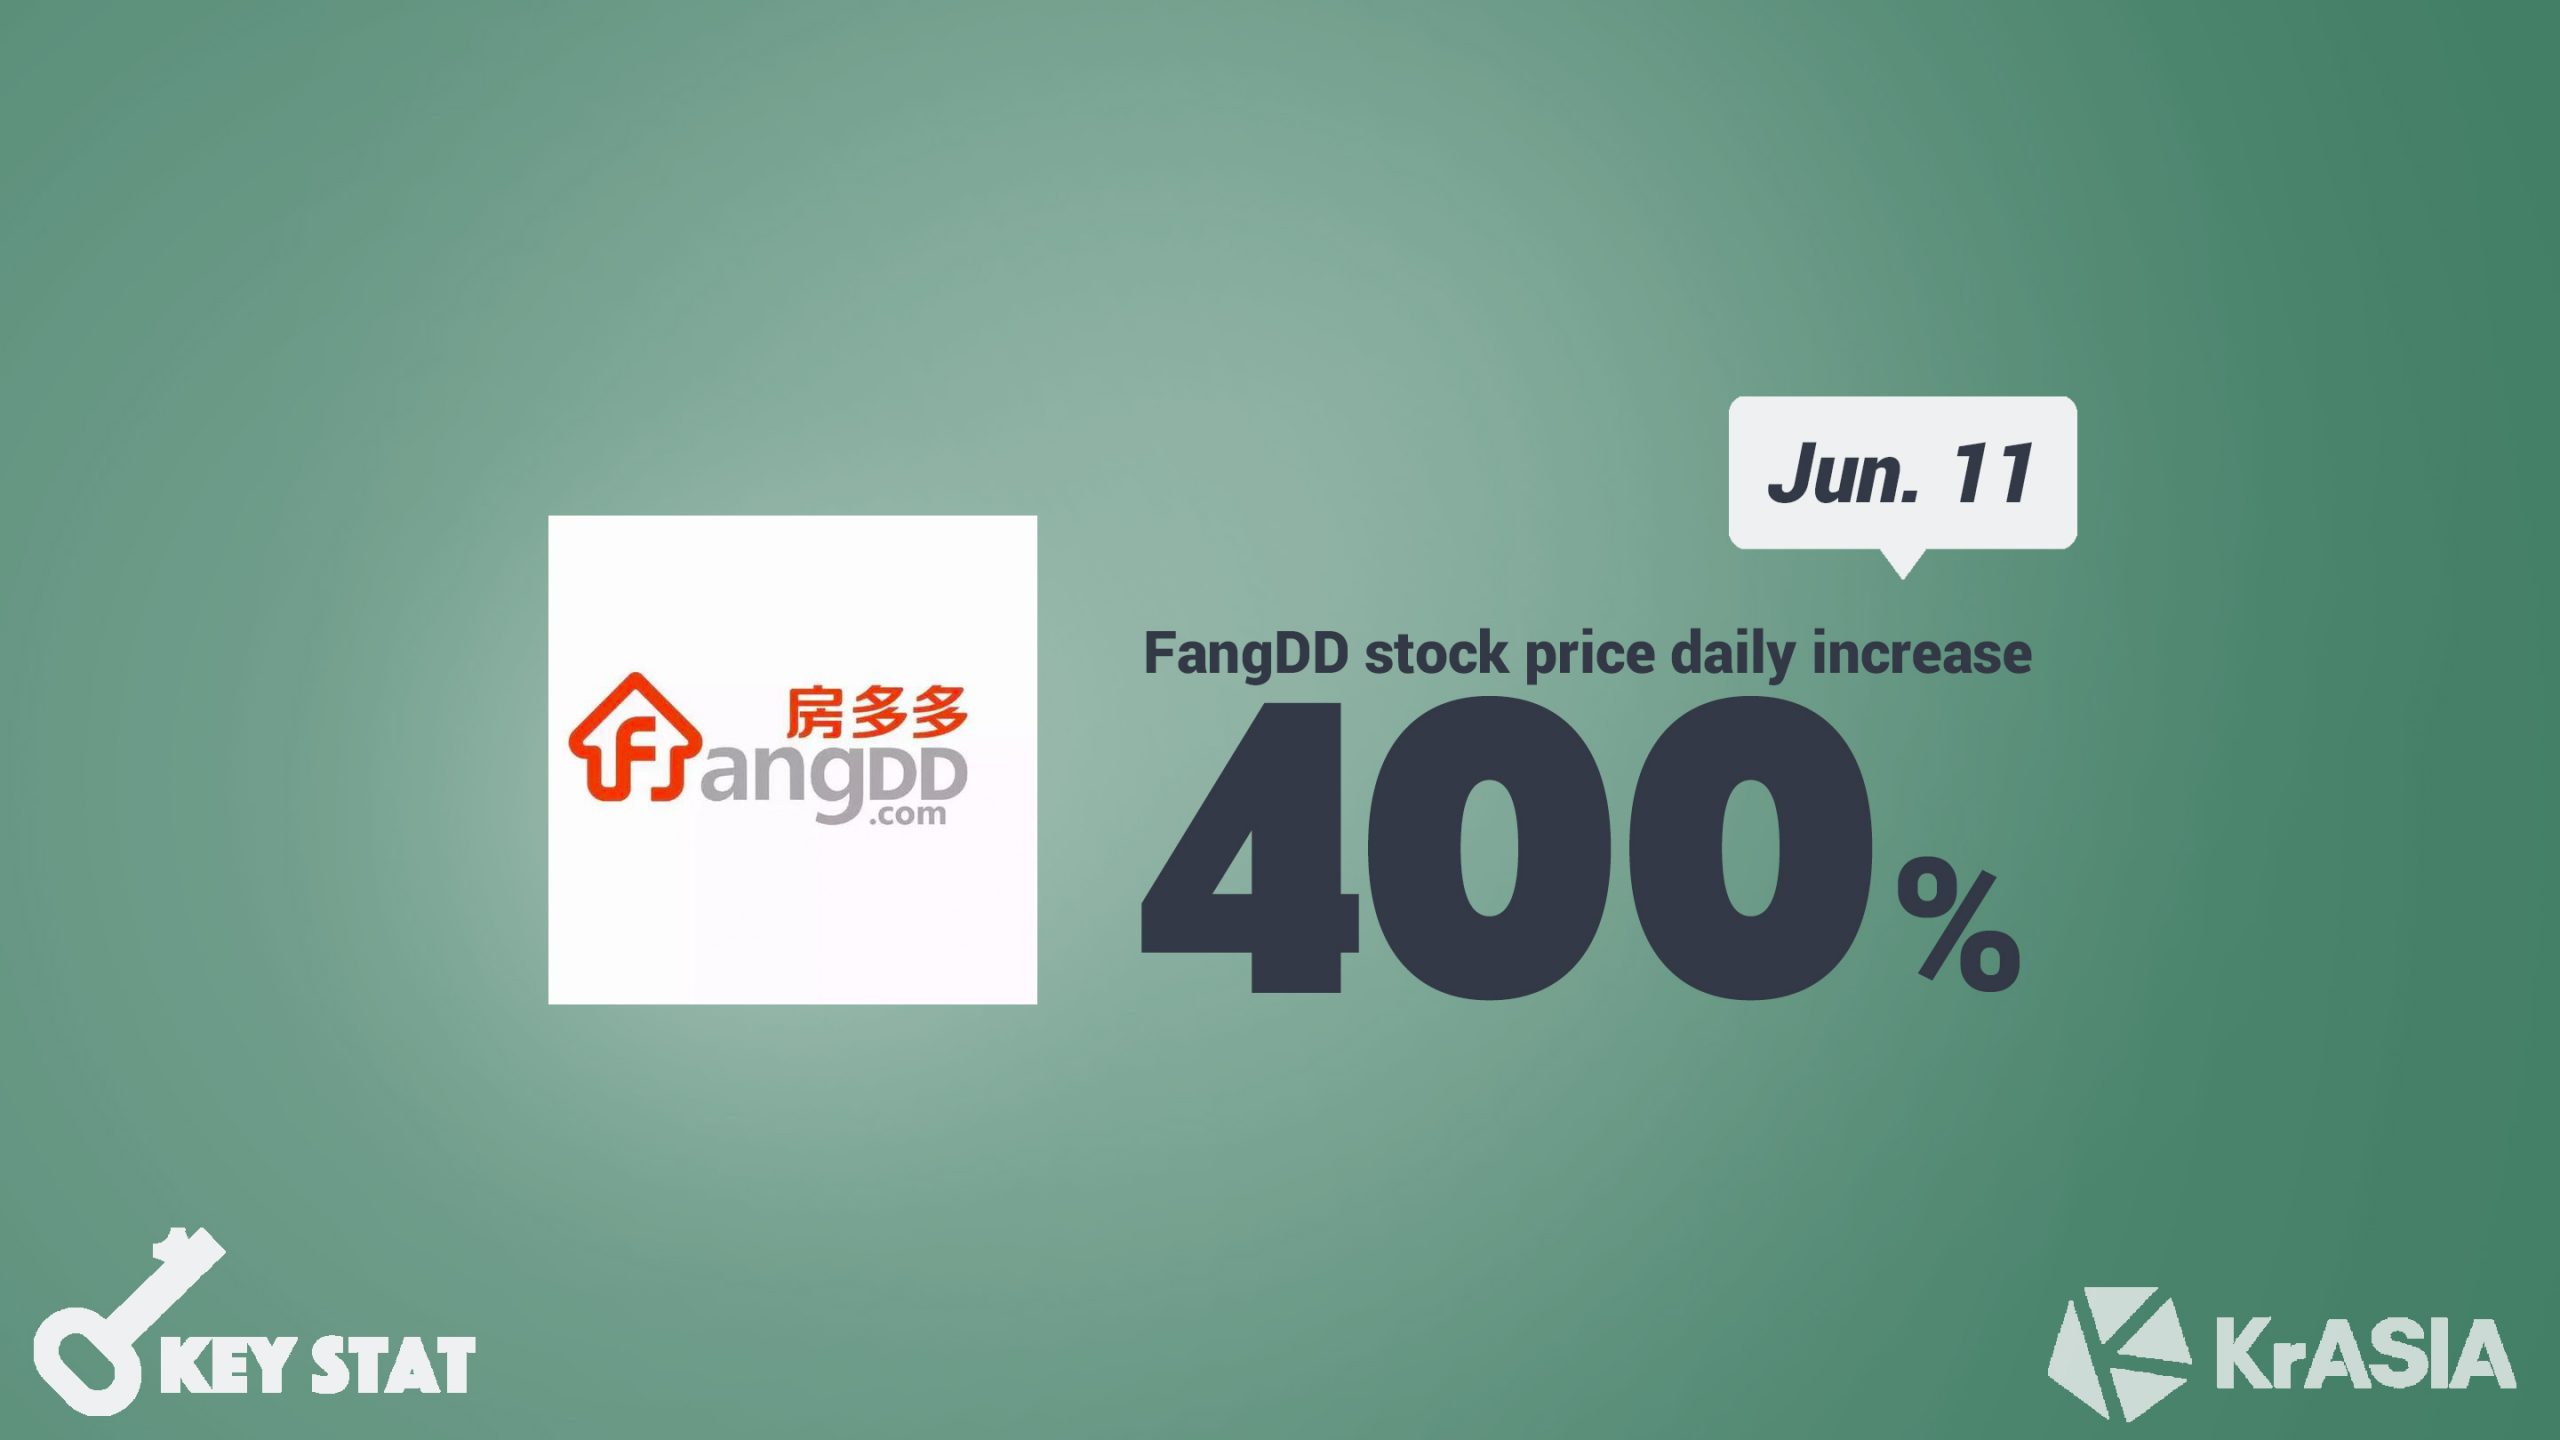 KEY STAT | Real estate platform Fangdd’s stock price mysteriously soars 400% overnight